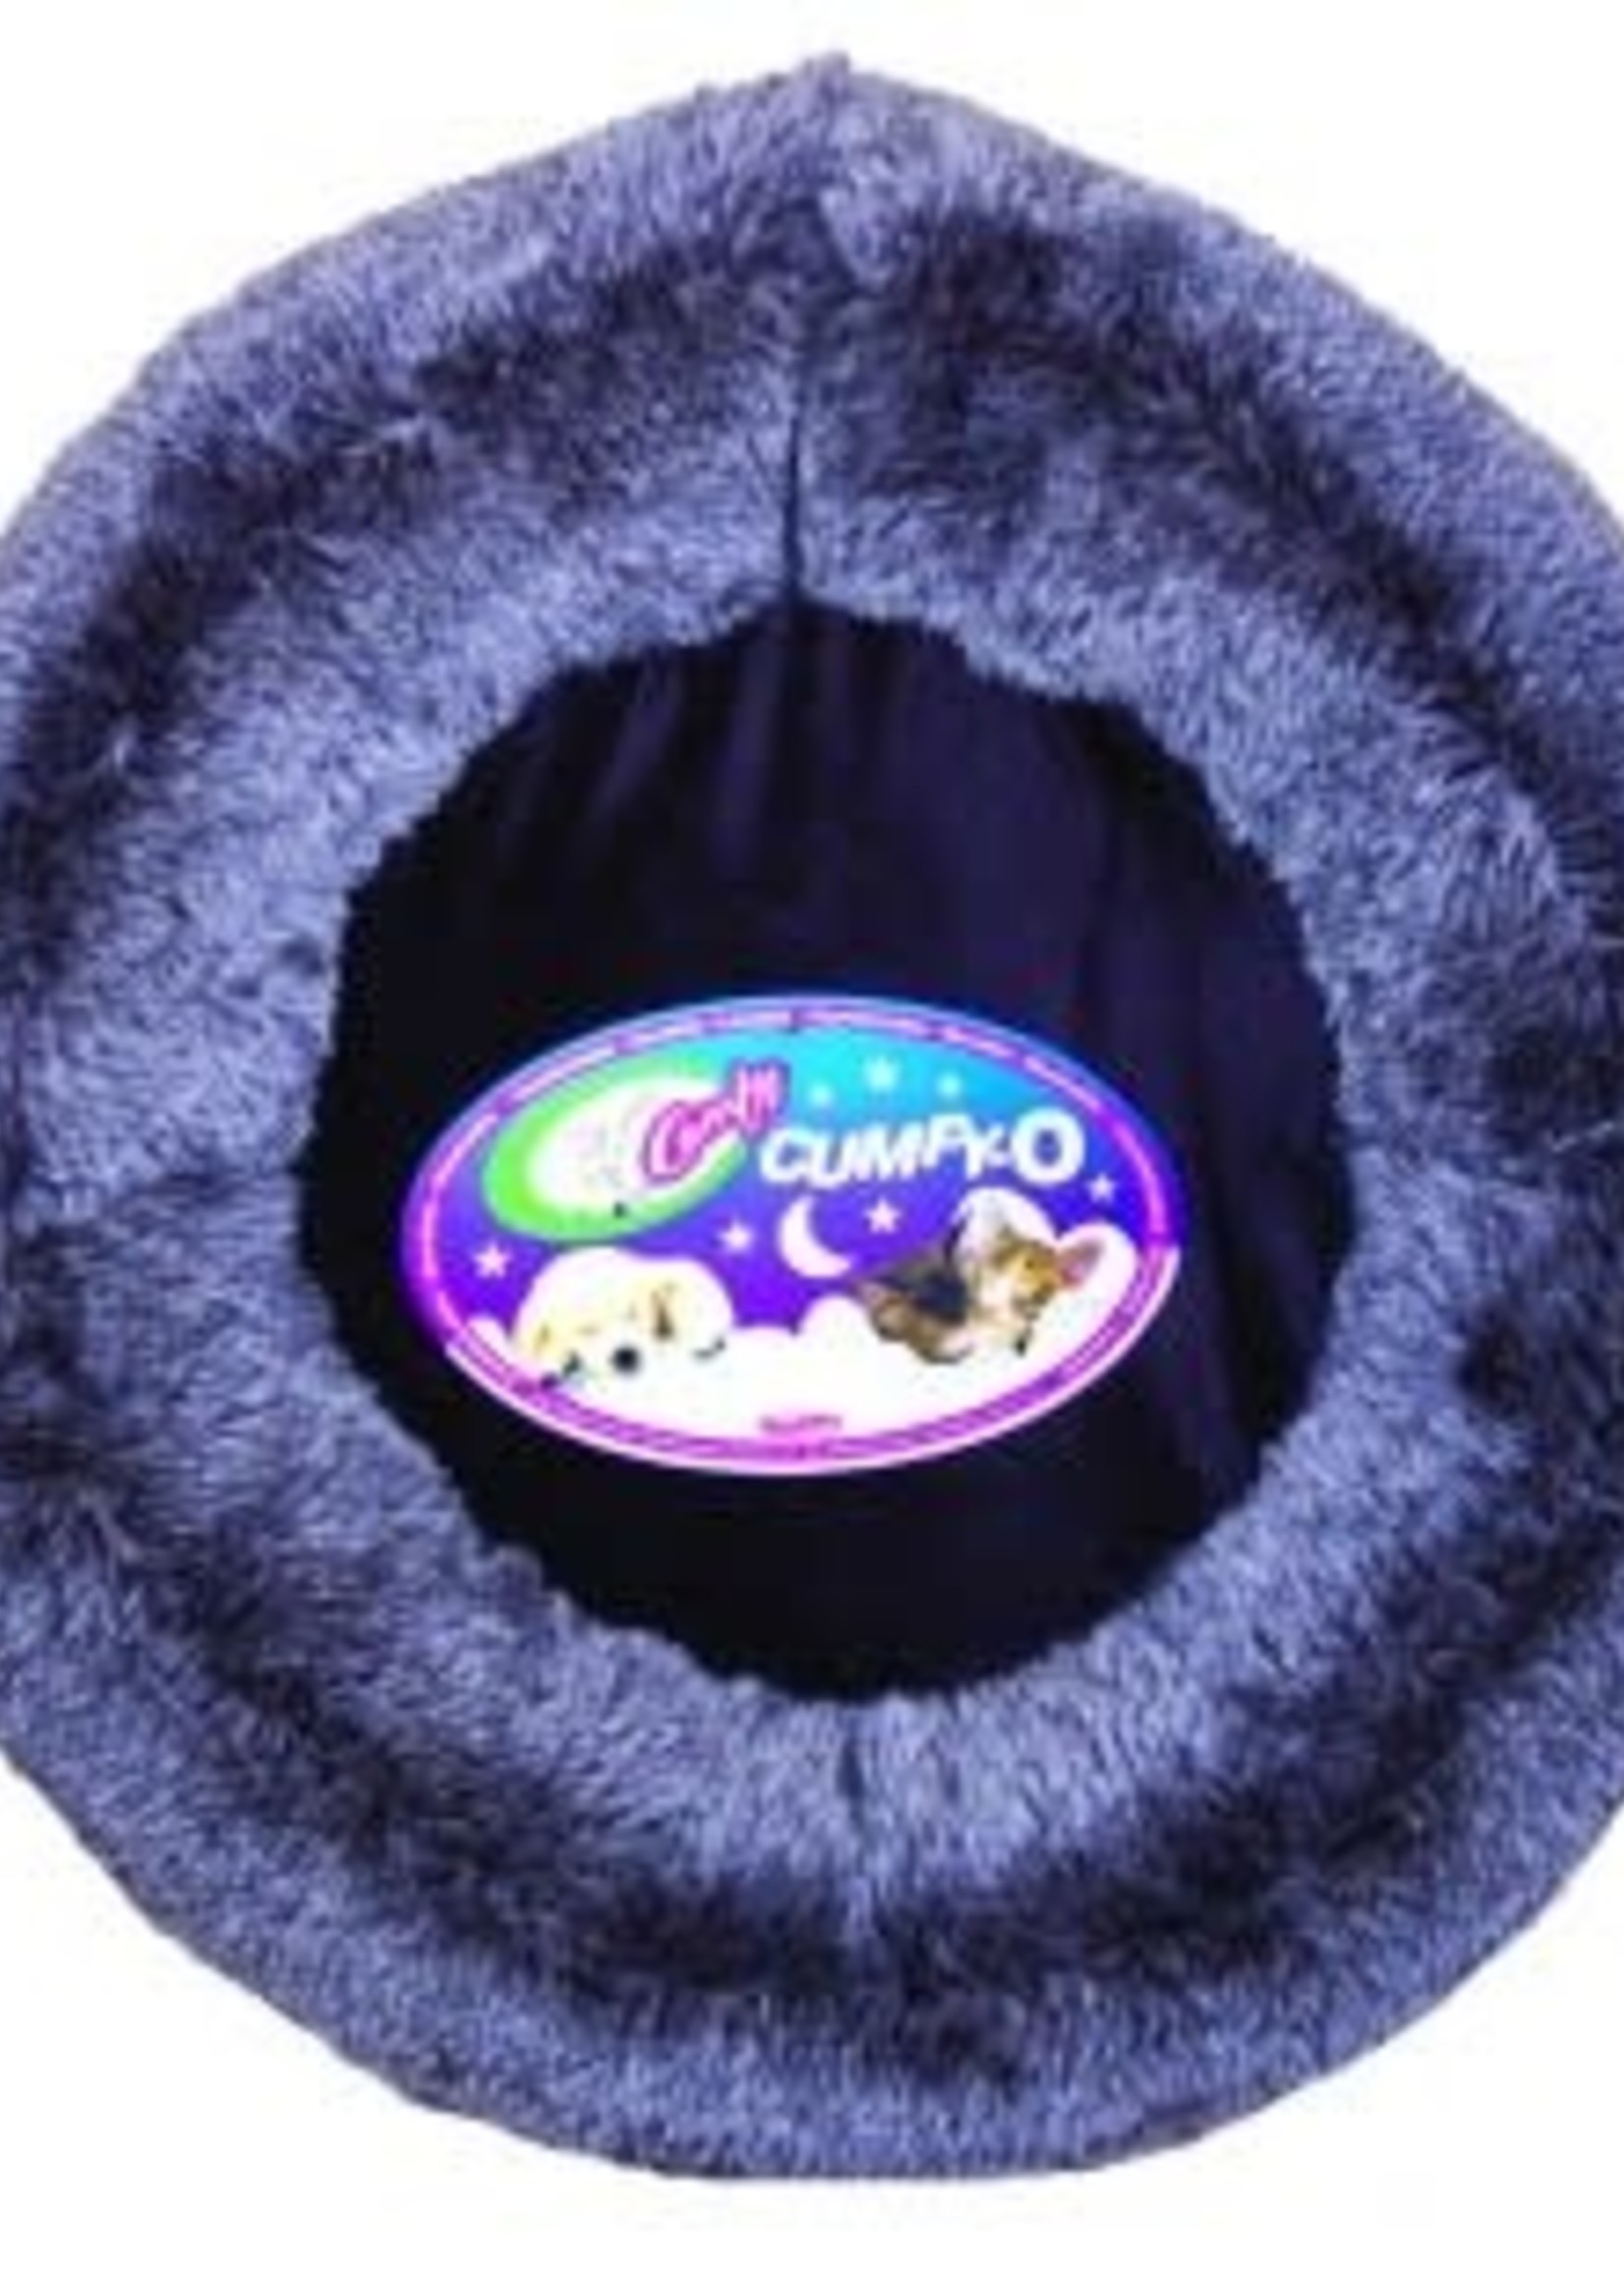 CUMFY-O's Ultra Soft Pet Bed - 17in